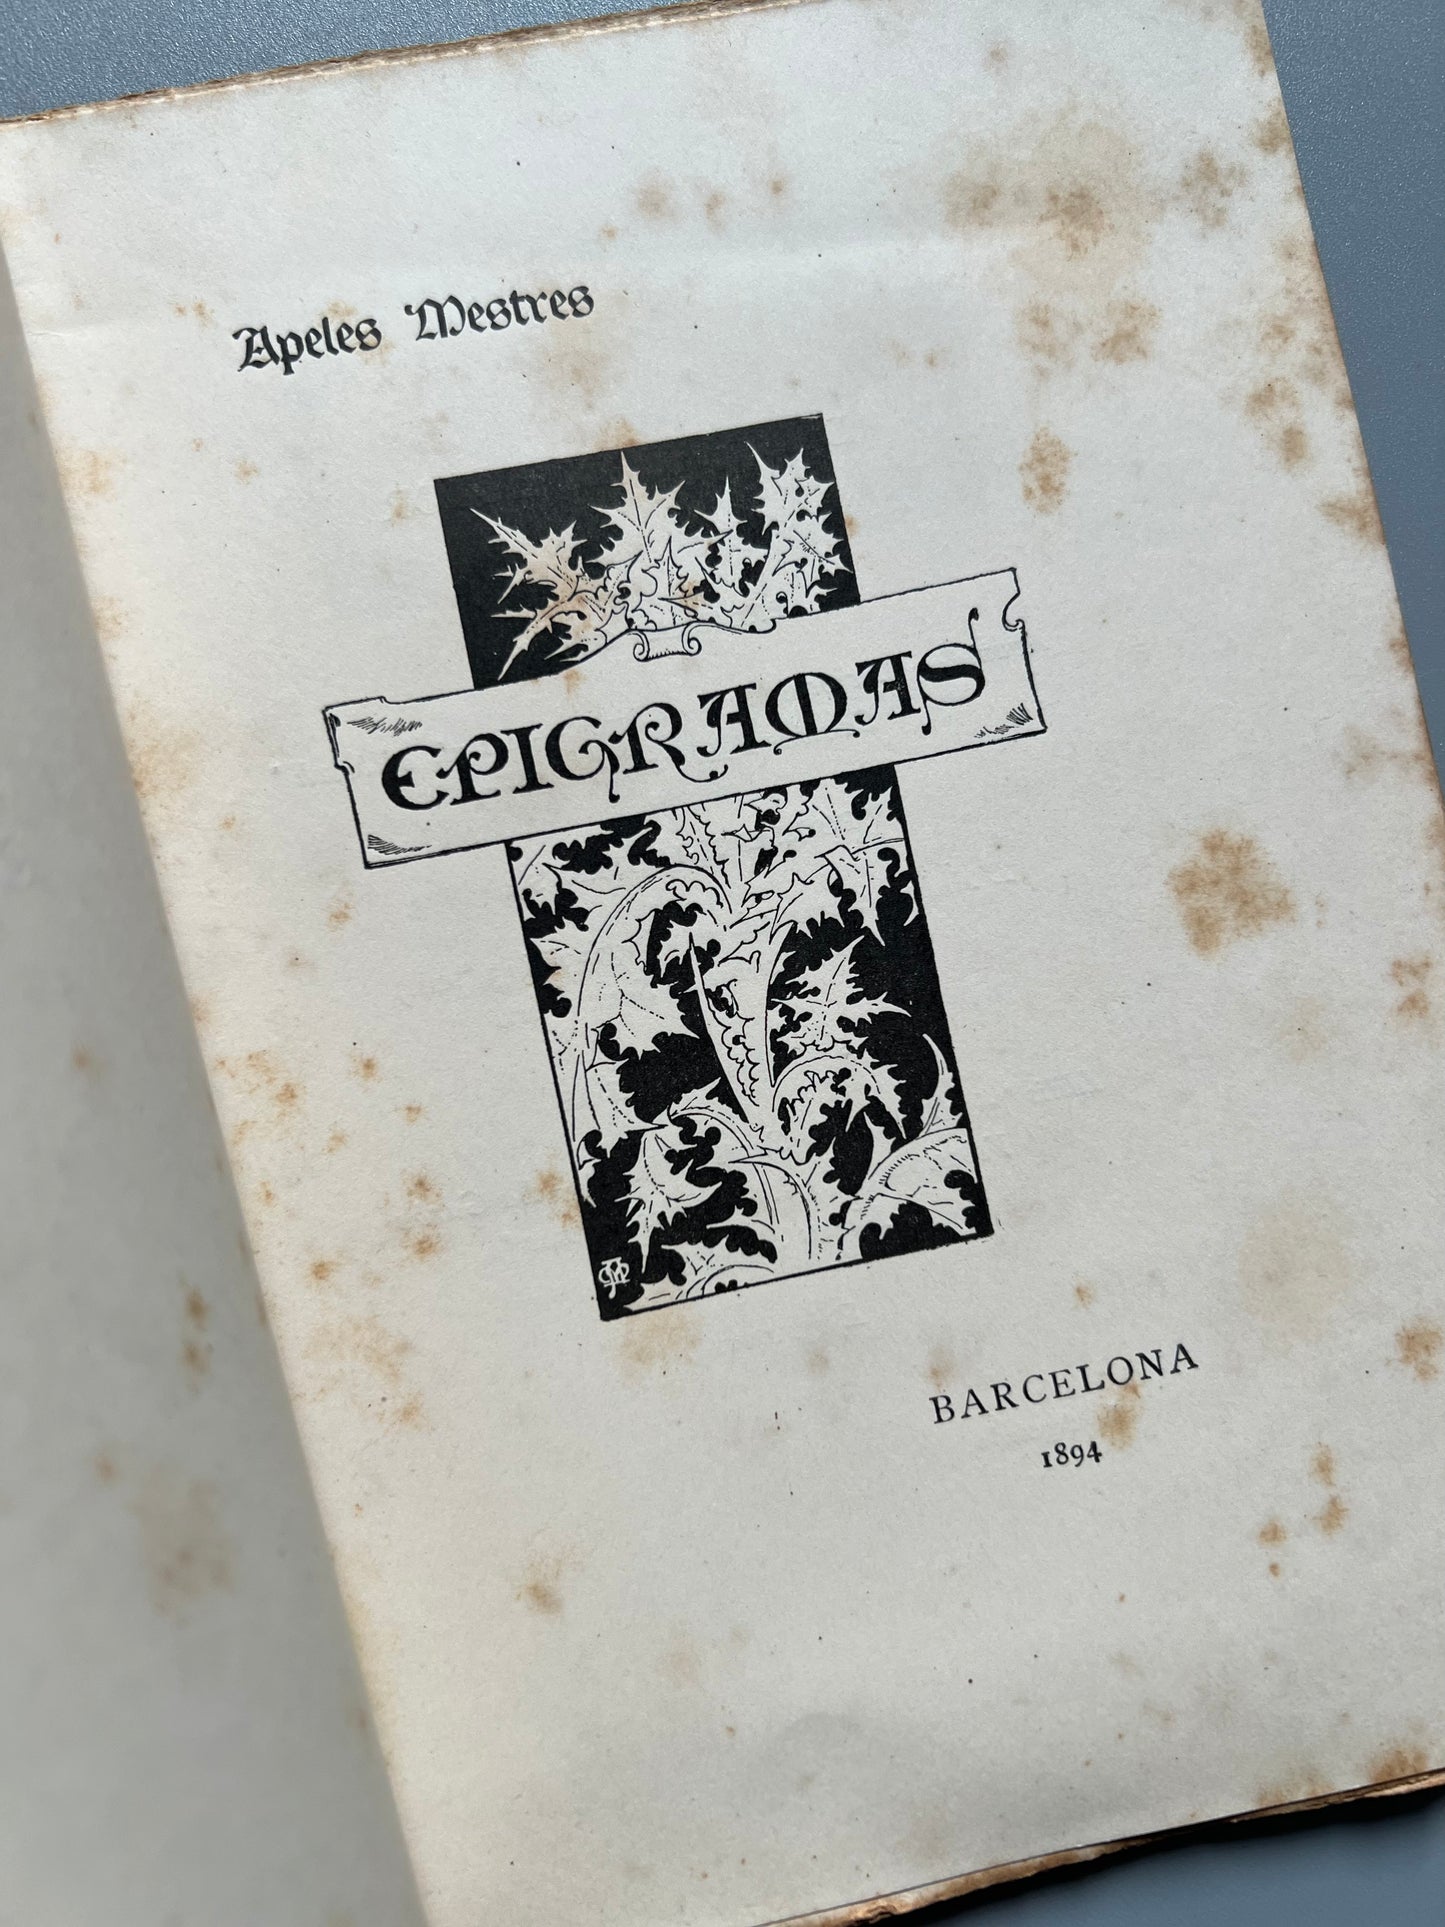 Epigramas, Apeles Mestres - Barcelona, 1894